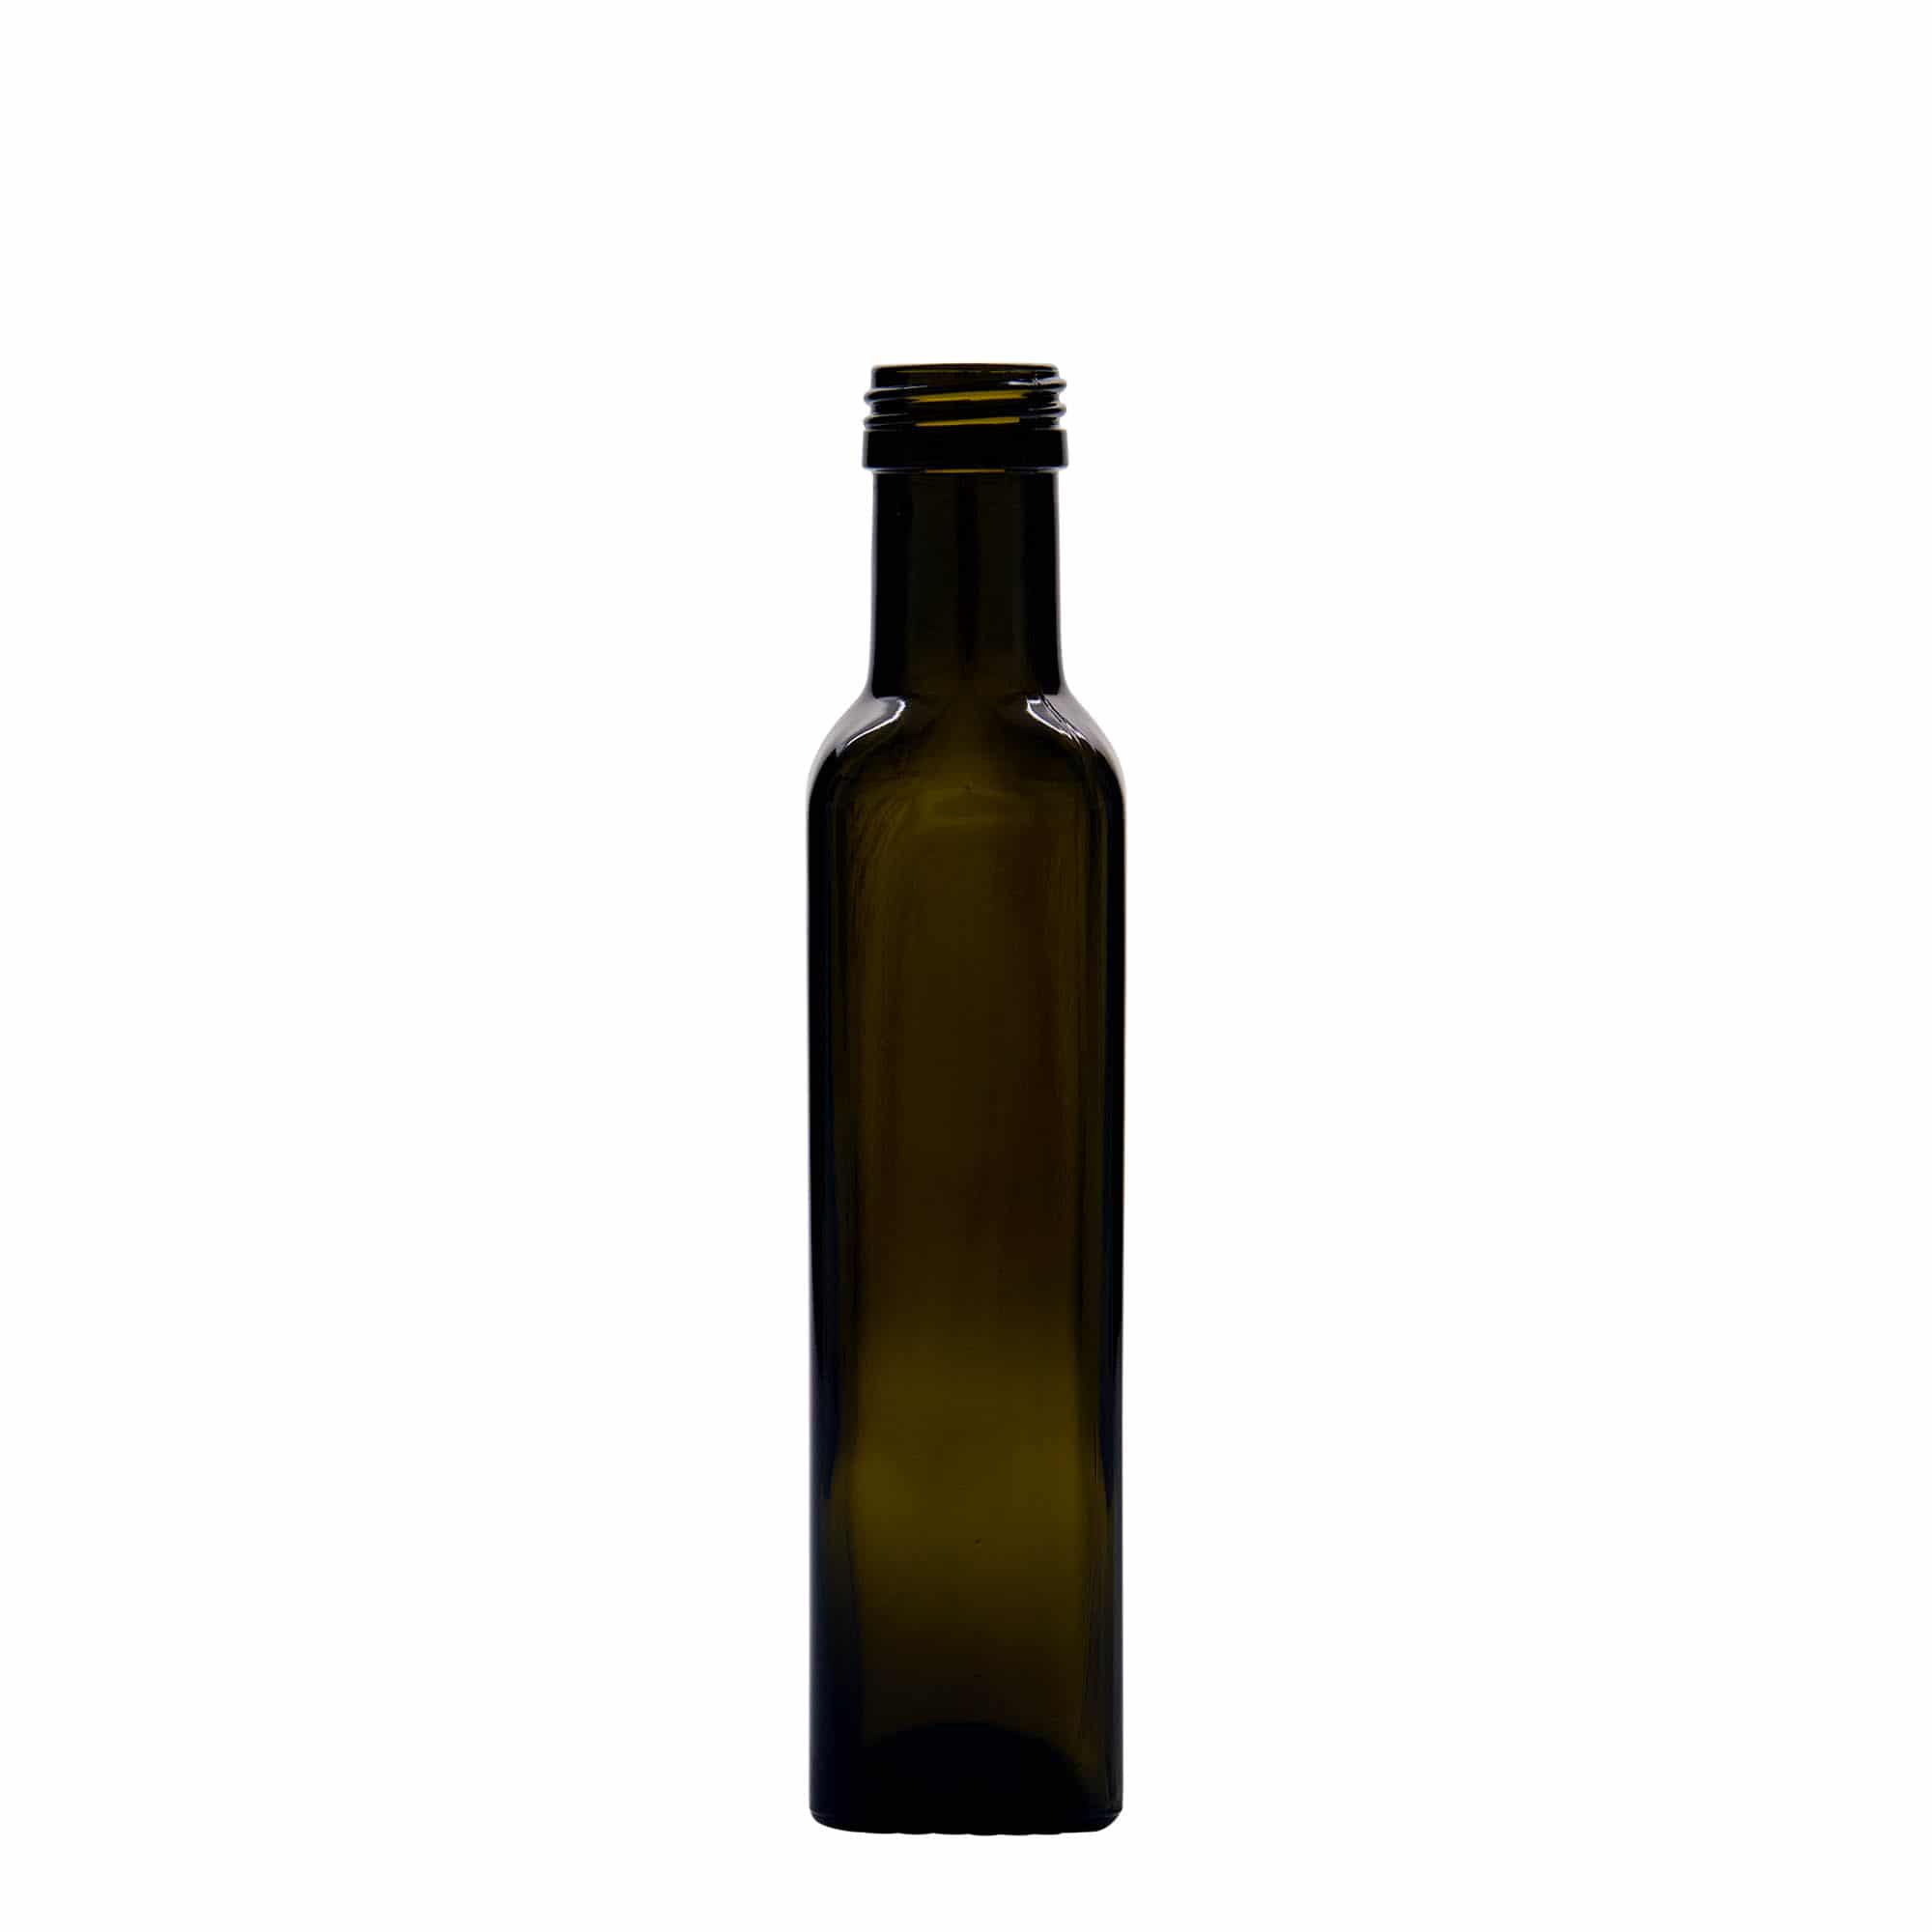 250 ml glasflaske 'Marasca', kvadratisk, antikgrøn, åbning: PP 31,5